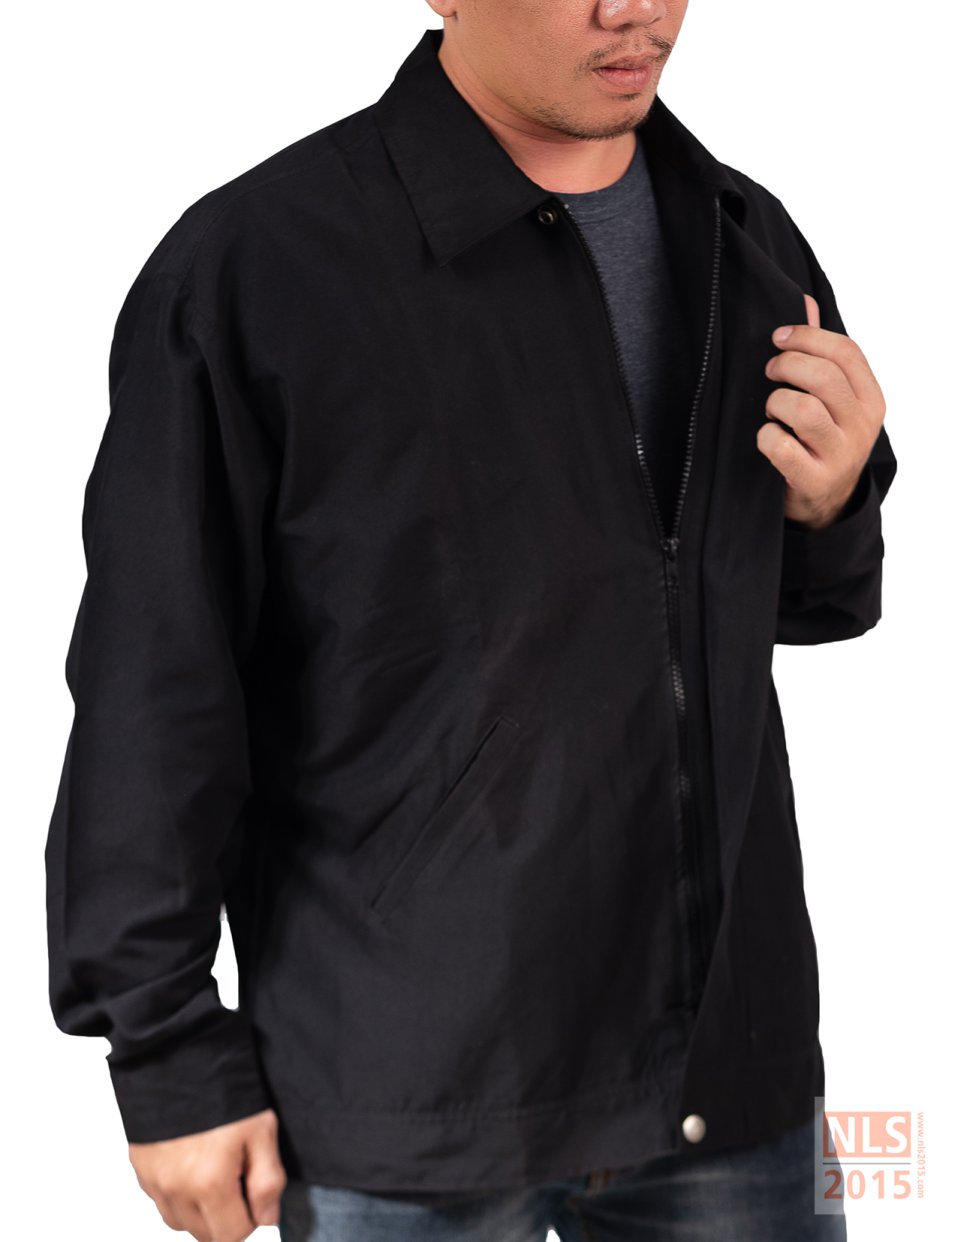 ตัวอย่างเสื้อแจ็คเก็ตพนักงานบริษัท PQCT / นลินสิริรับผลิตเสื้อแจ็คเก็ต ยูนิฟอร์มพนักงาน พร้อมปักโลโก้รูปที่ 